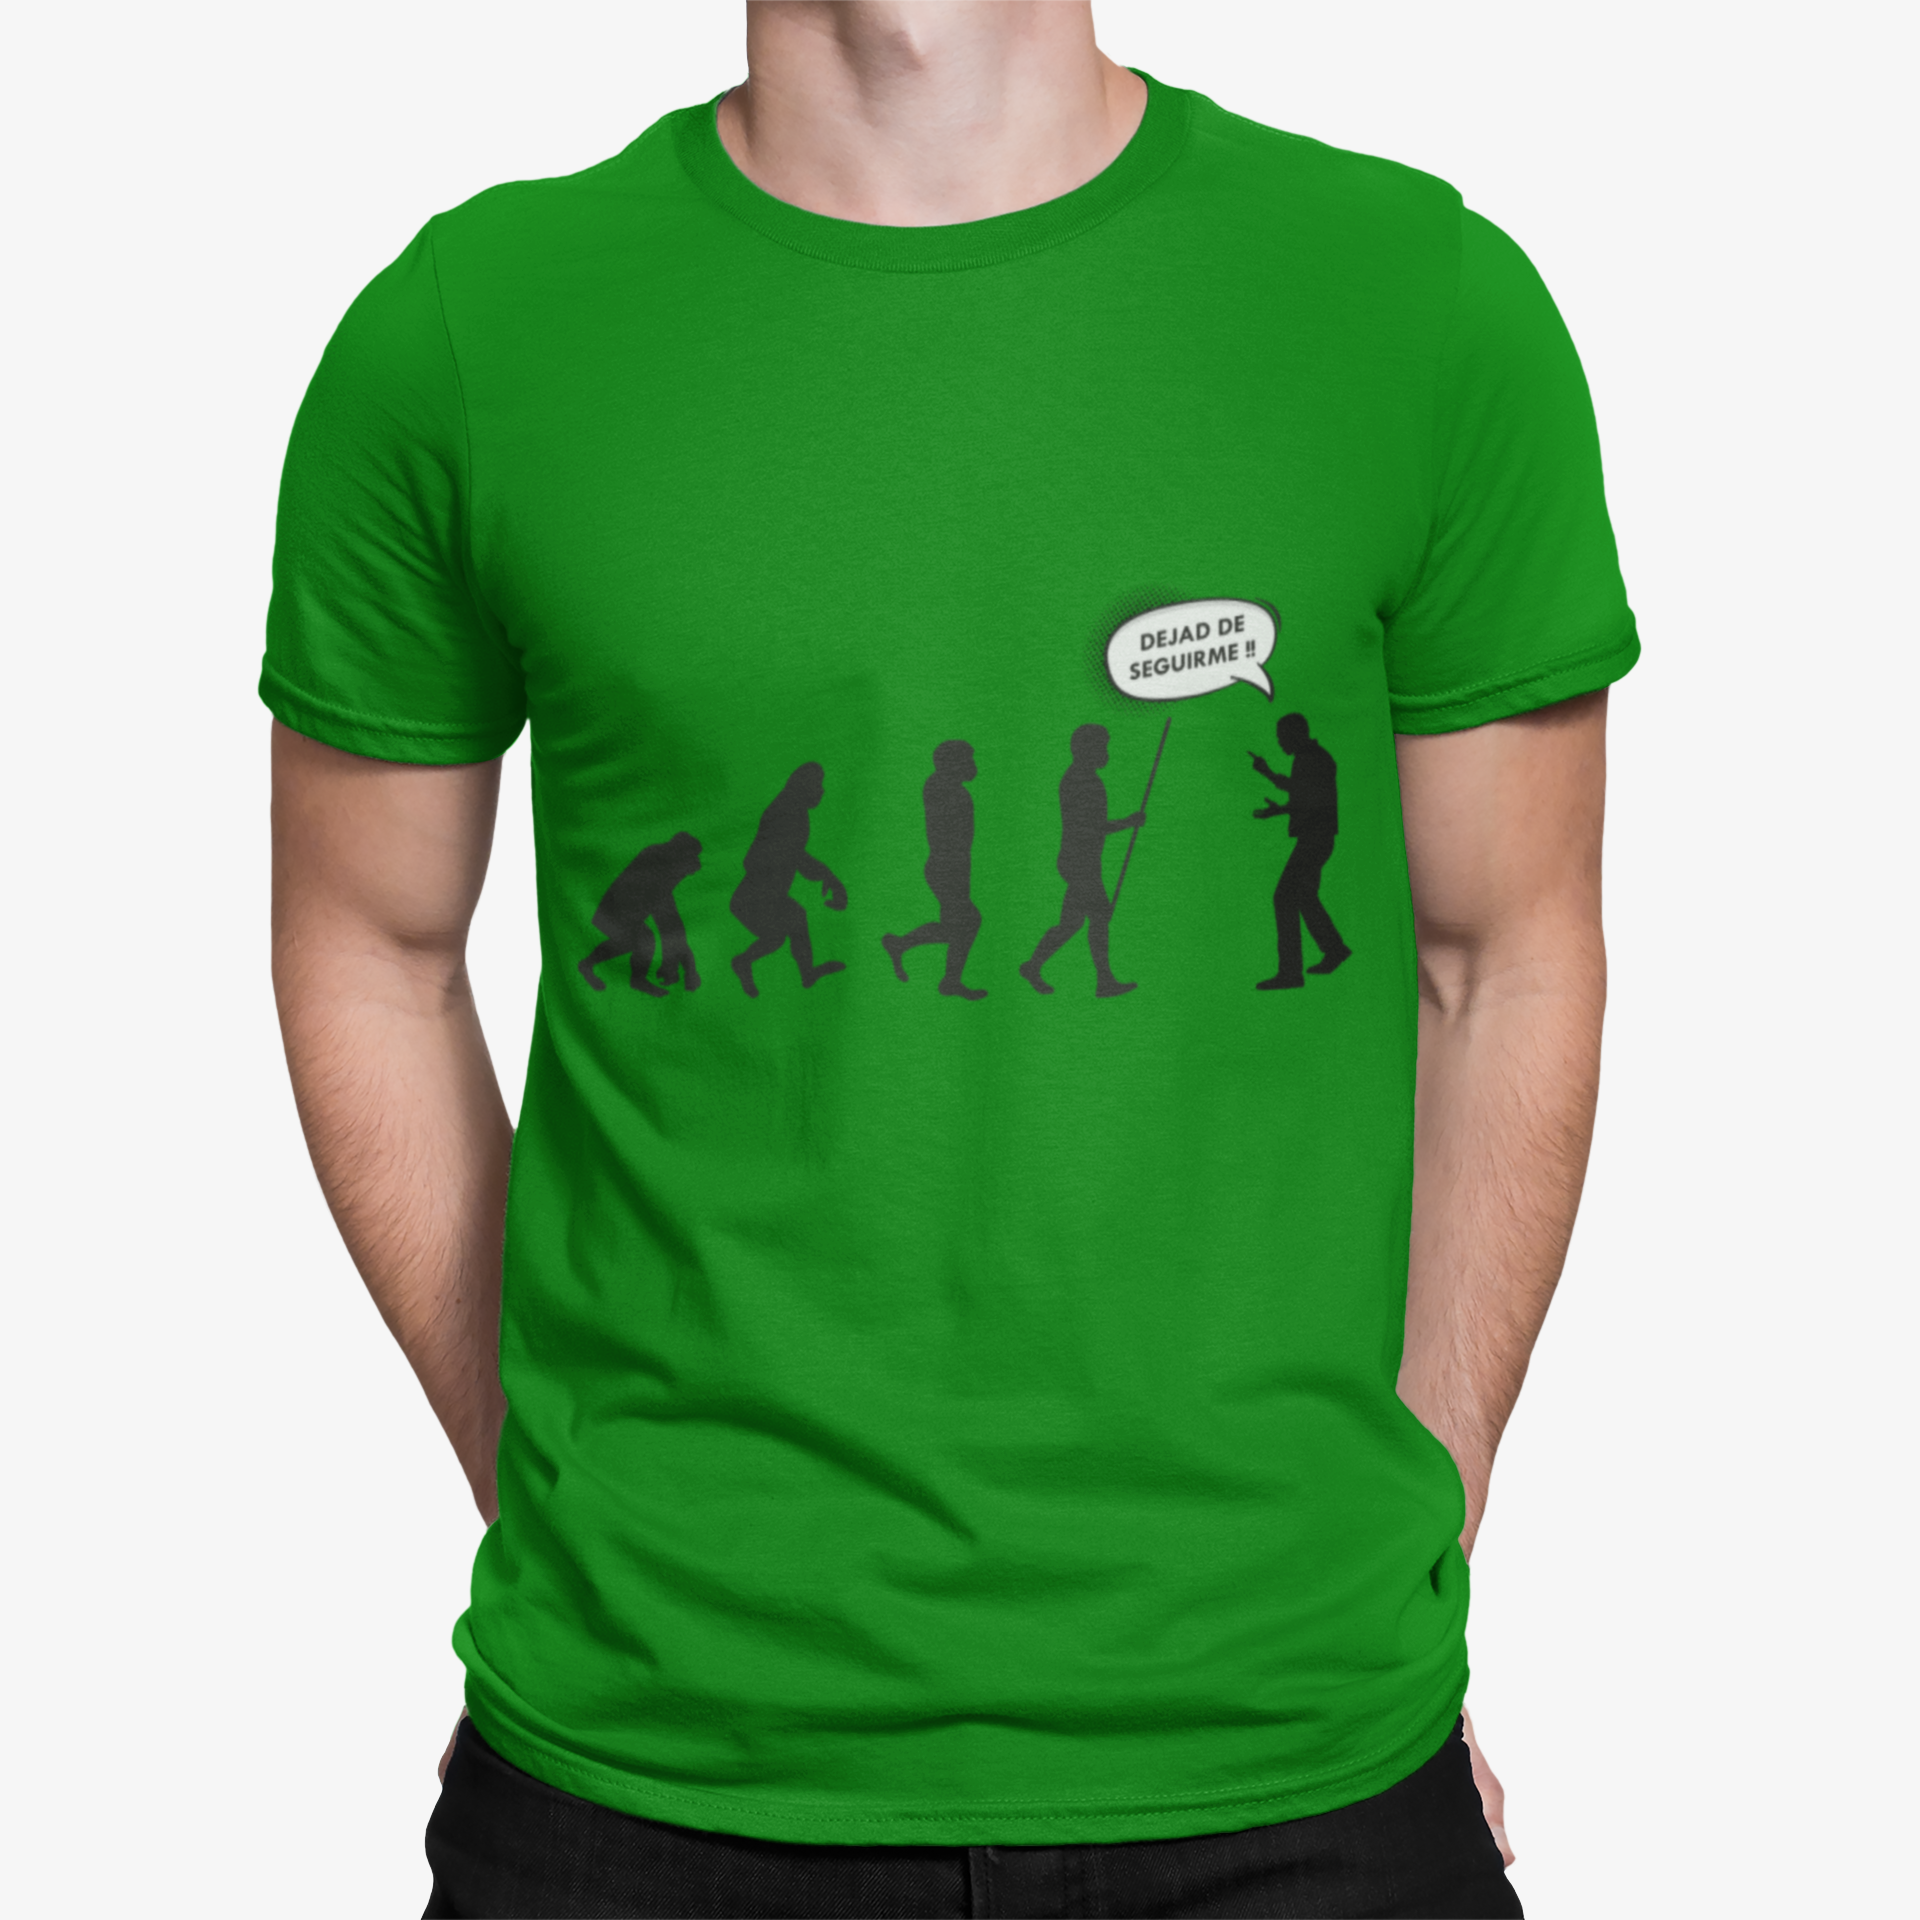 Camiseta Seguir Evolucion